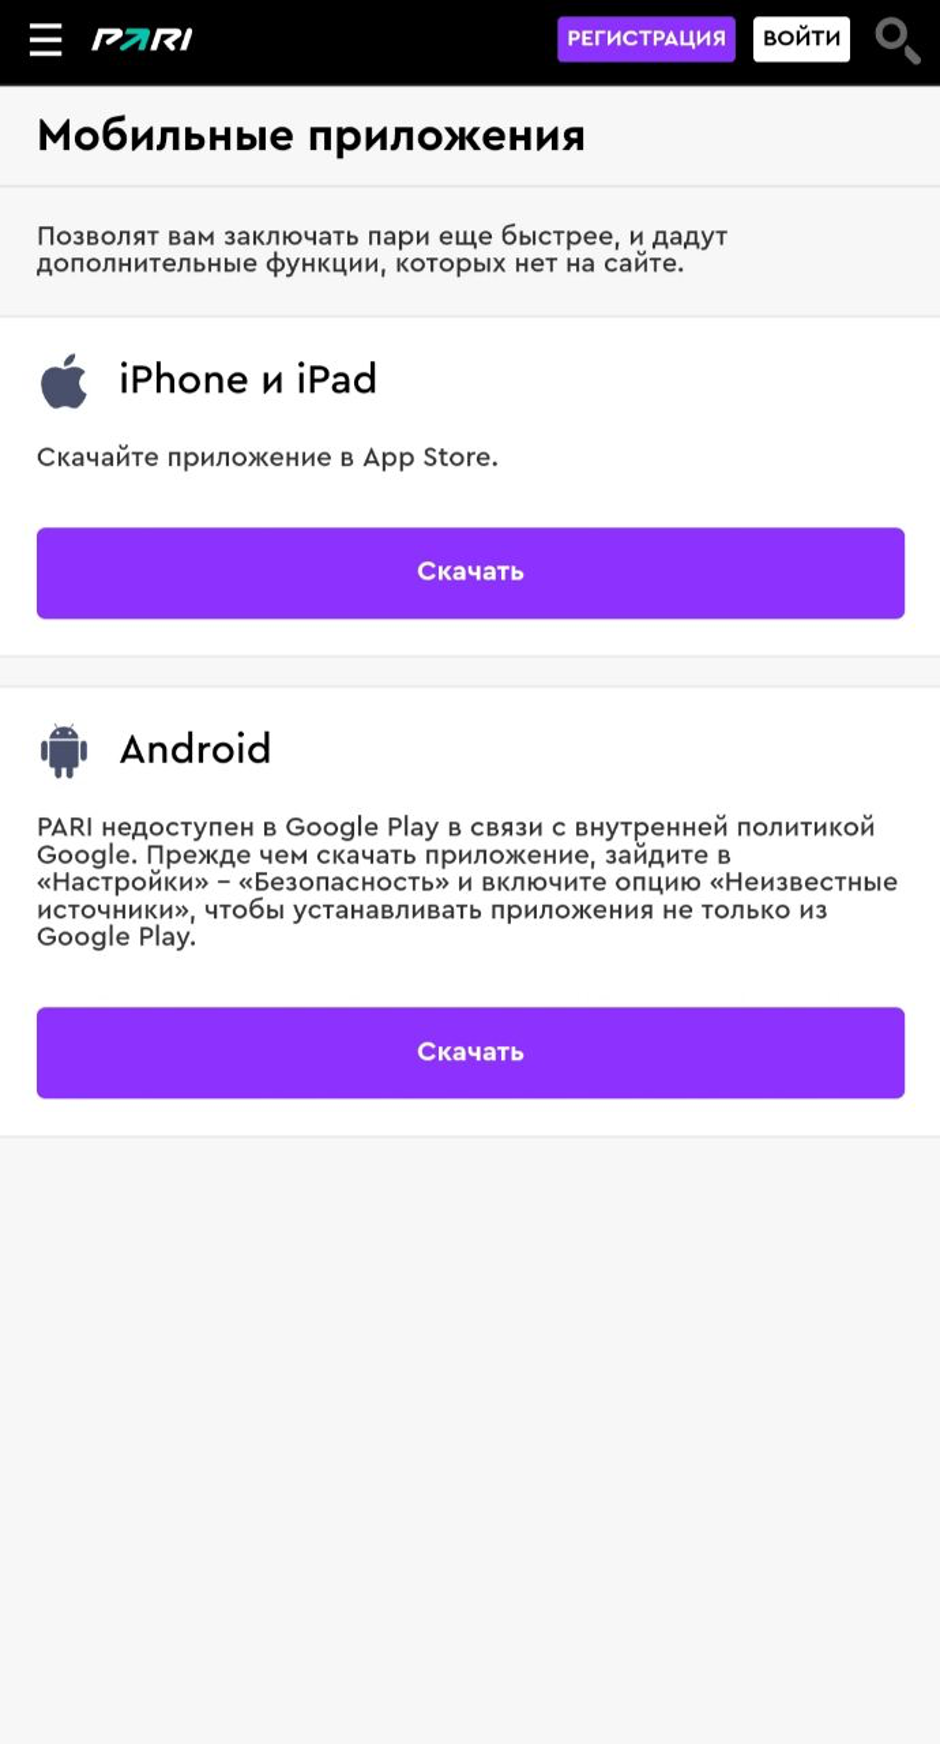 Мобильное приложение БК Pari скачать для Android и IOS фото